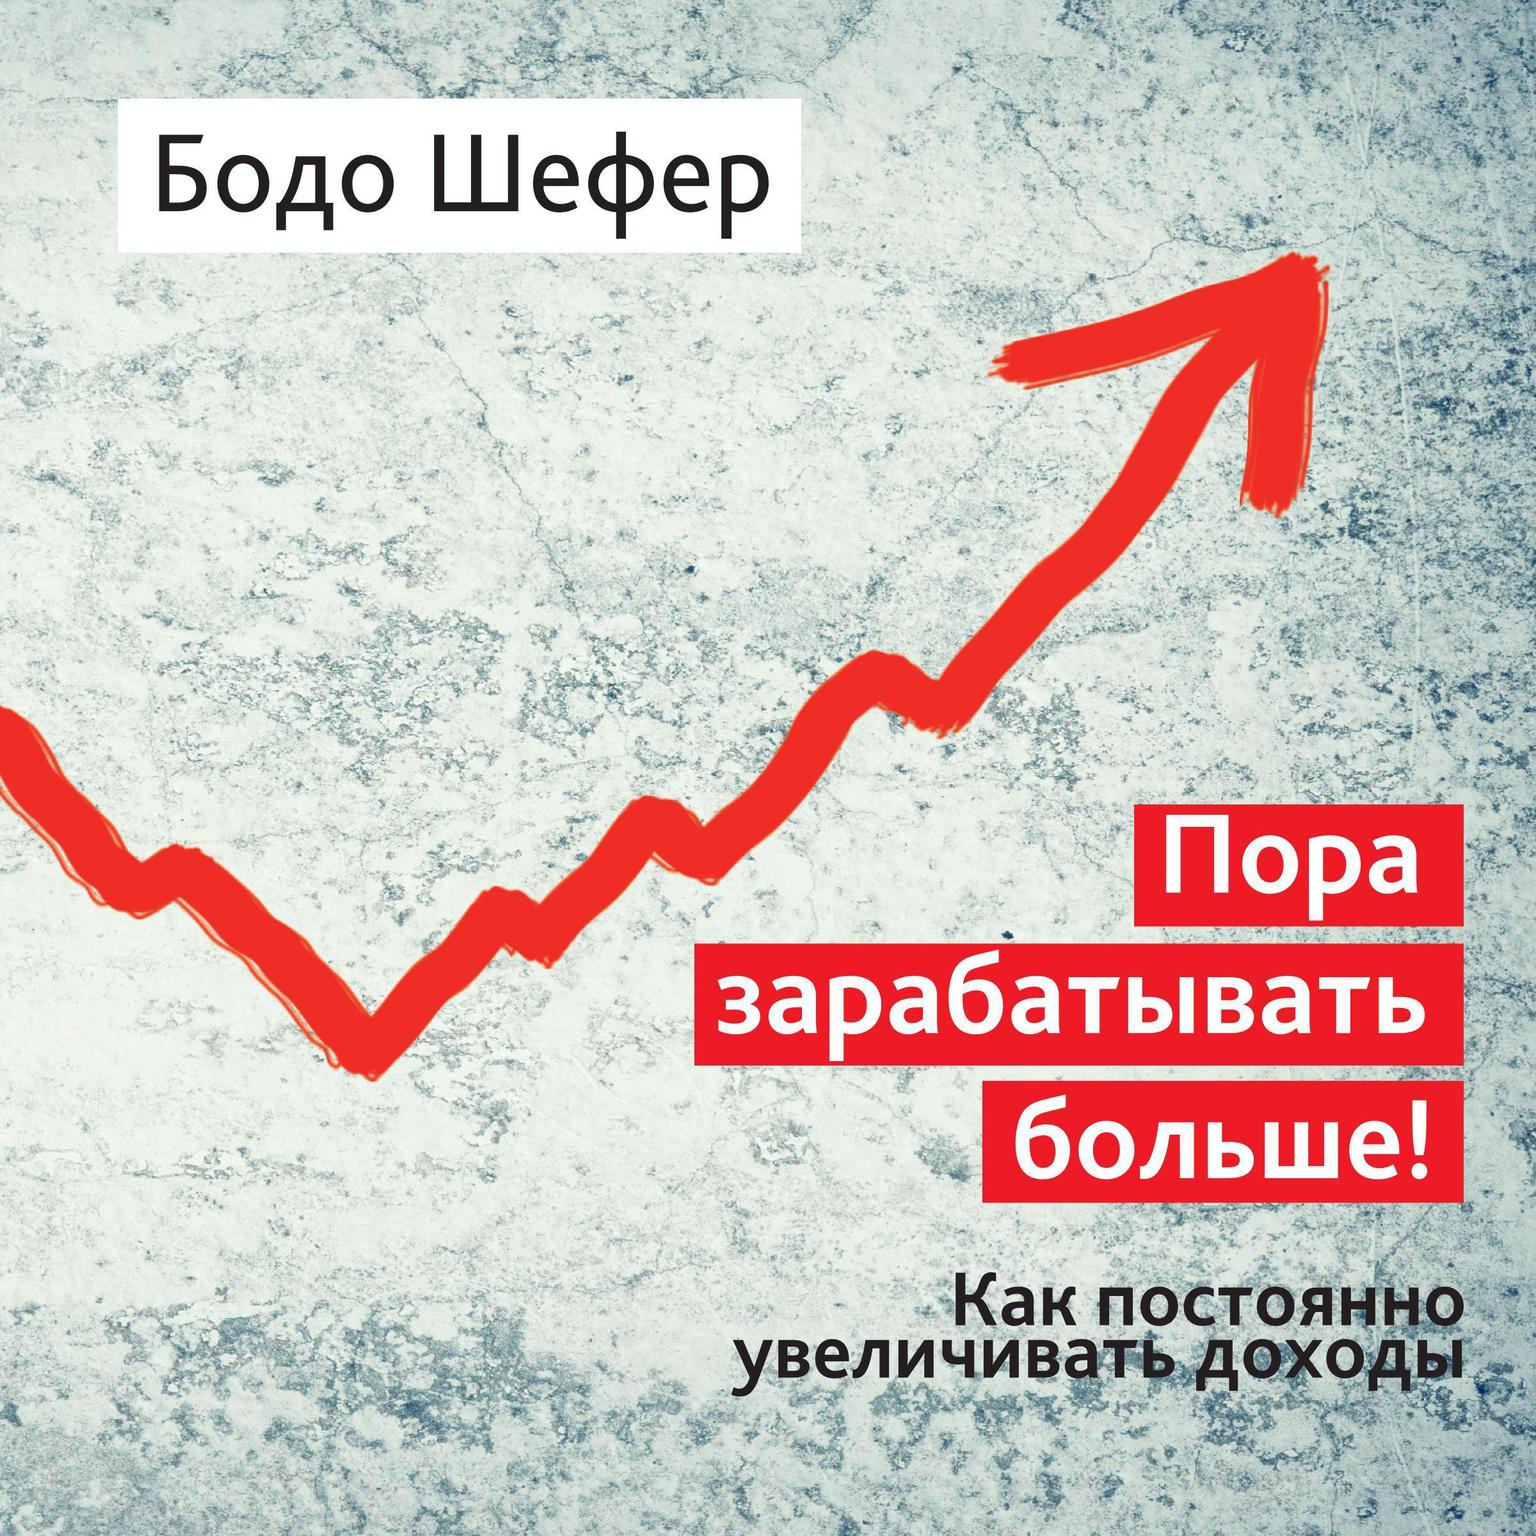 Endlich Mehr Verdienen: 20 % mehr Einkommen in einem Jahr [Russian Edition] Audiobook, by Bodo Schäfer